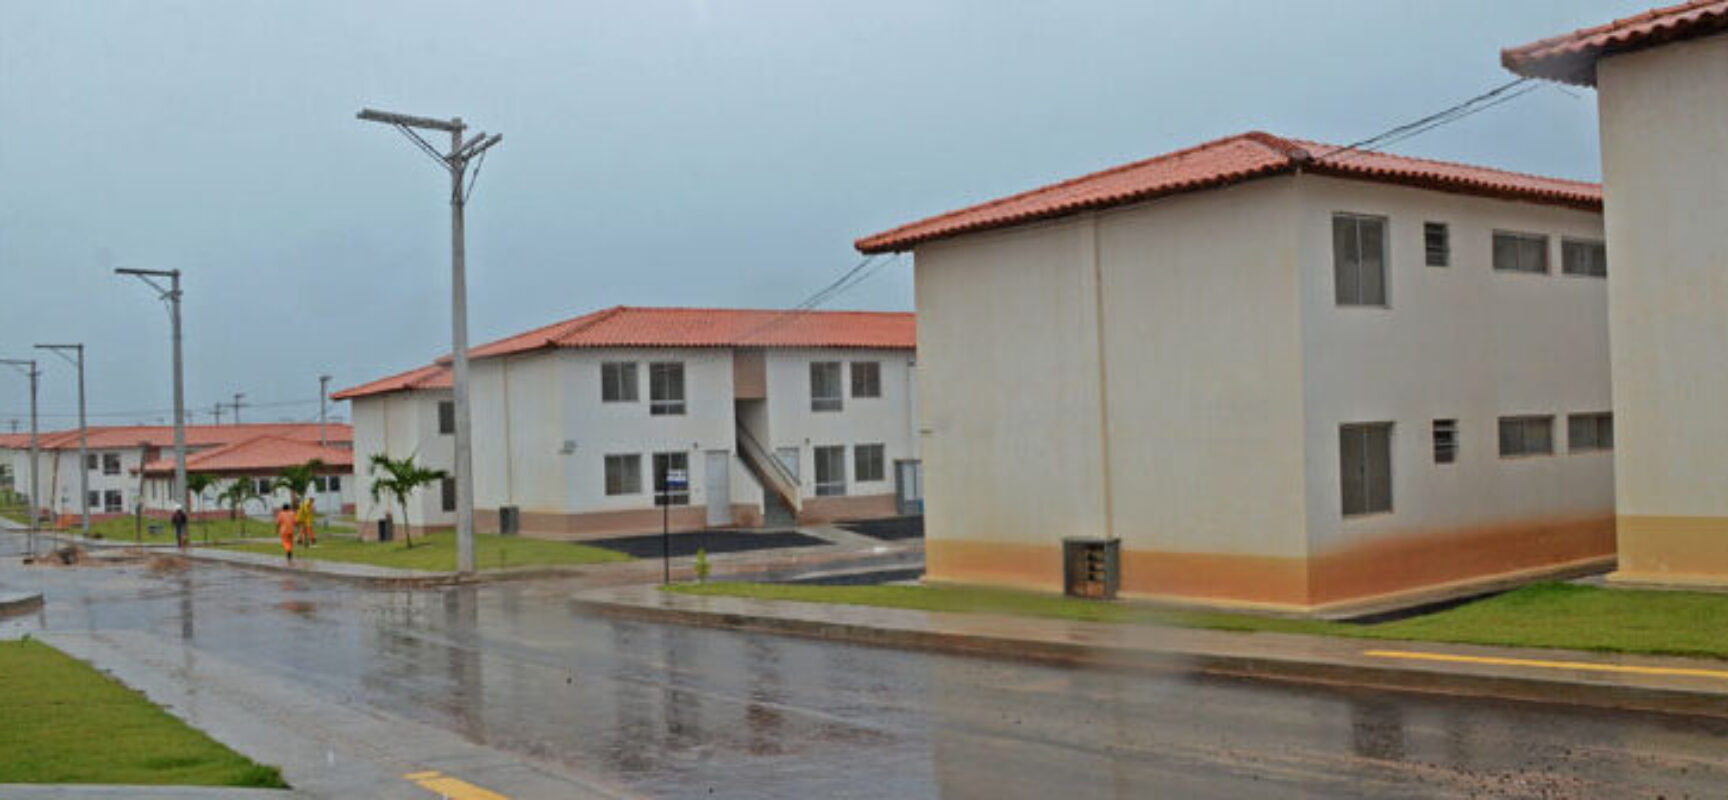 Governo Federal anuncia investimentos em habitação no município de Camaçari (BA)